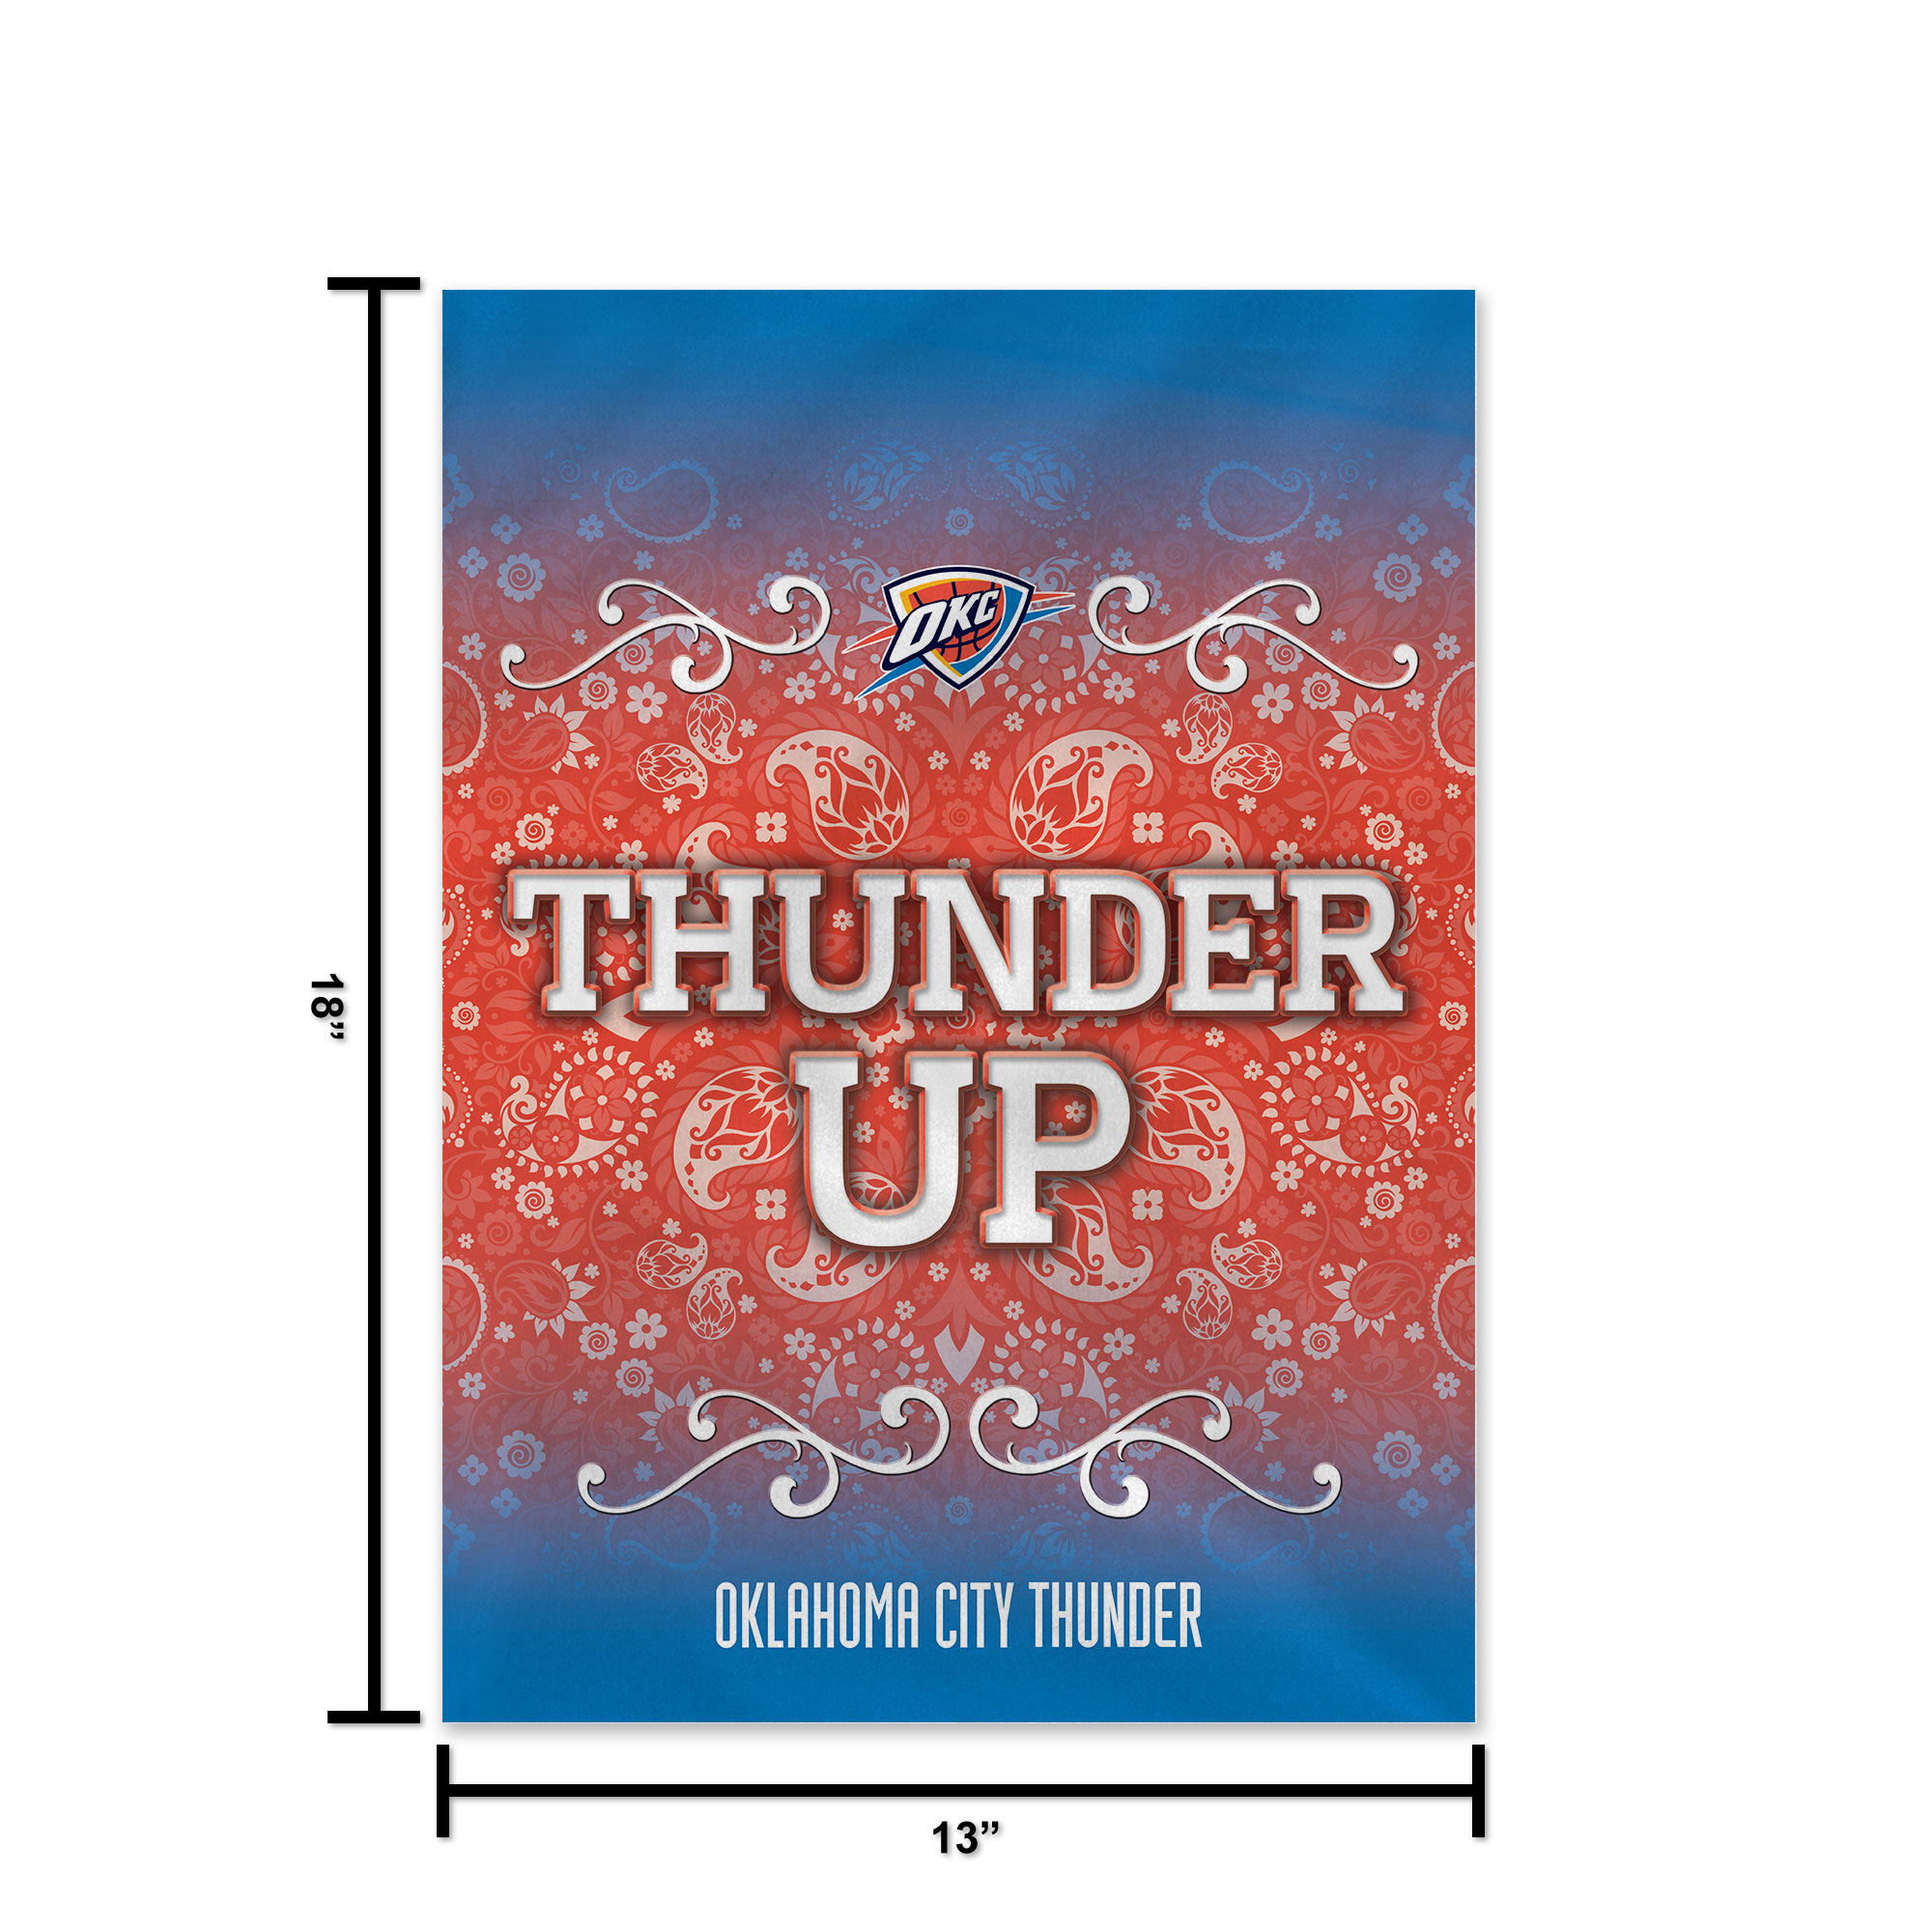 Rico Industries NBA Basketball Oklahoma City Thunder "Thunder Up" Double Sided Garden Flag